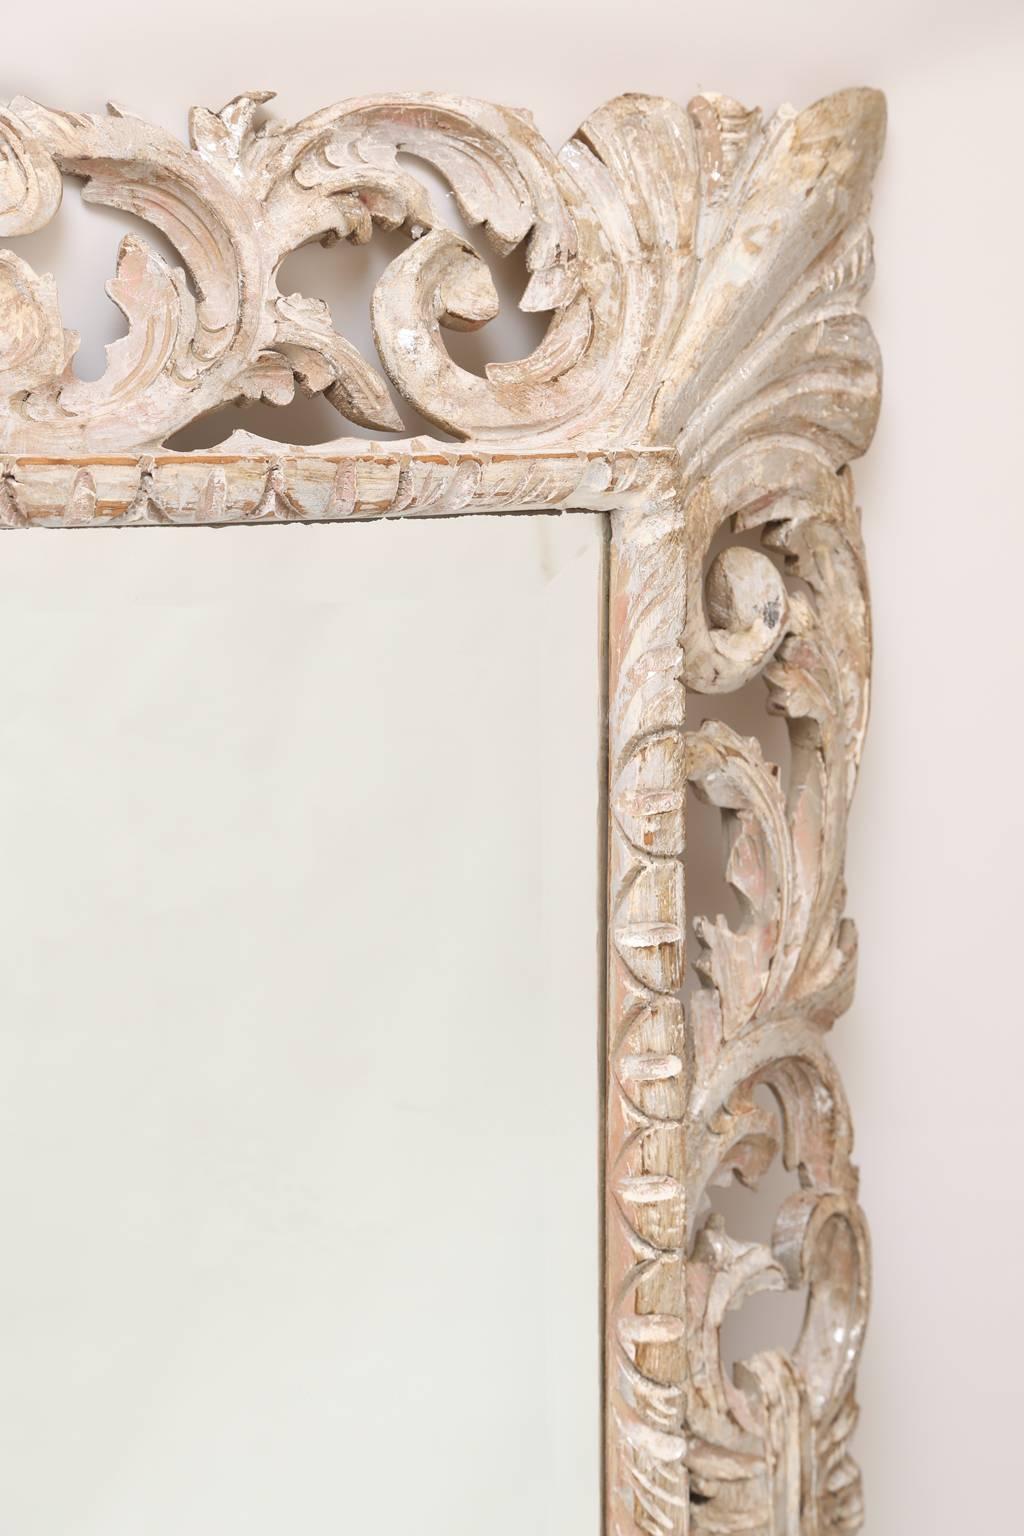 Miroir mural, en bois sculpté à la main, finition bois naturel et décapé, avec une parcelle de dorure argentée, présentant une plaque de miroir biseautée, montée à l'intérieur d'un cadre rectangulaire, décoré de godrons, bordé de feuilles d'acanthe